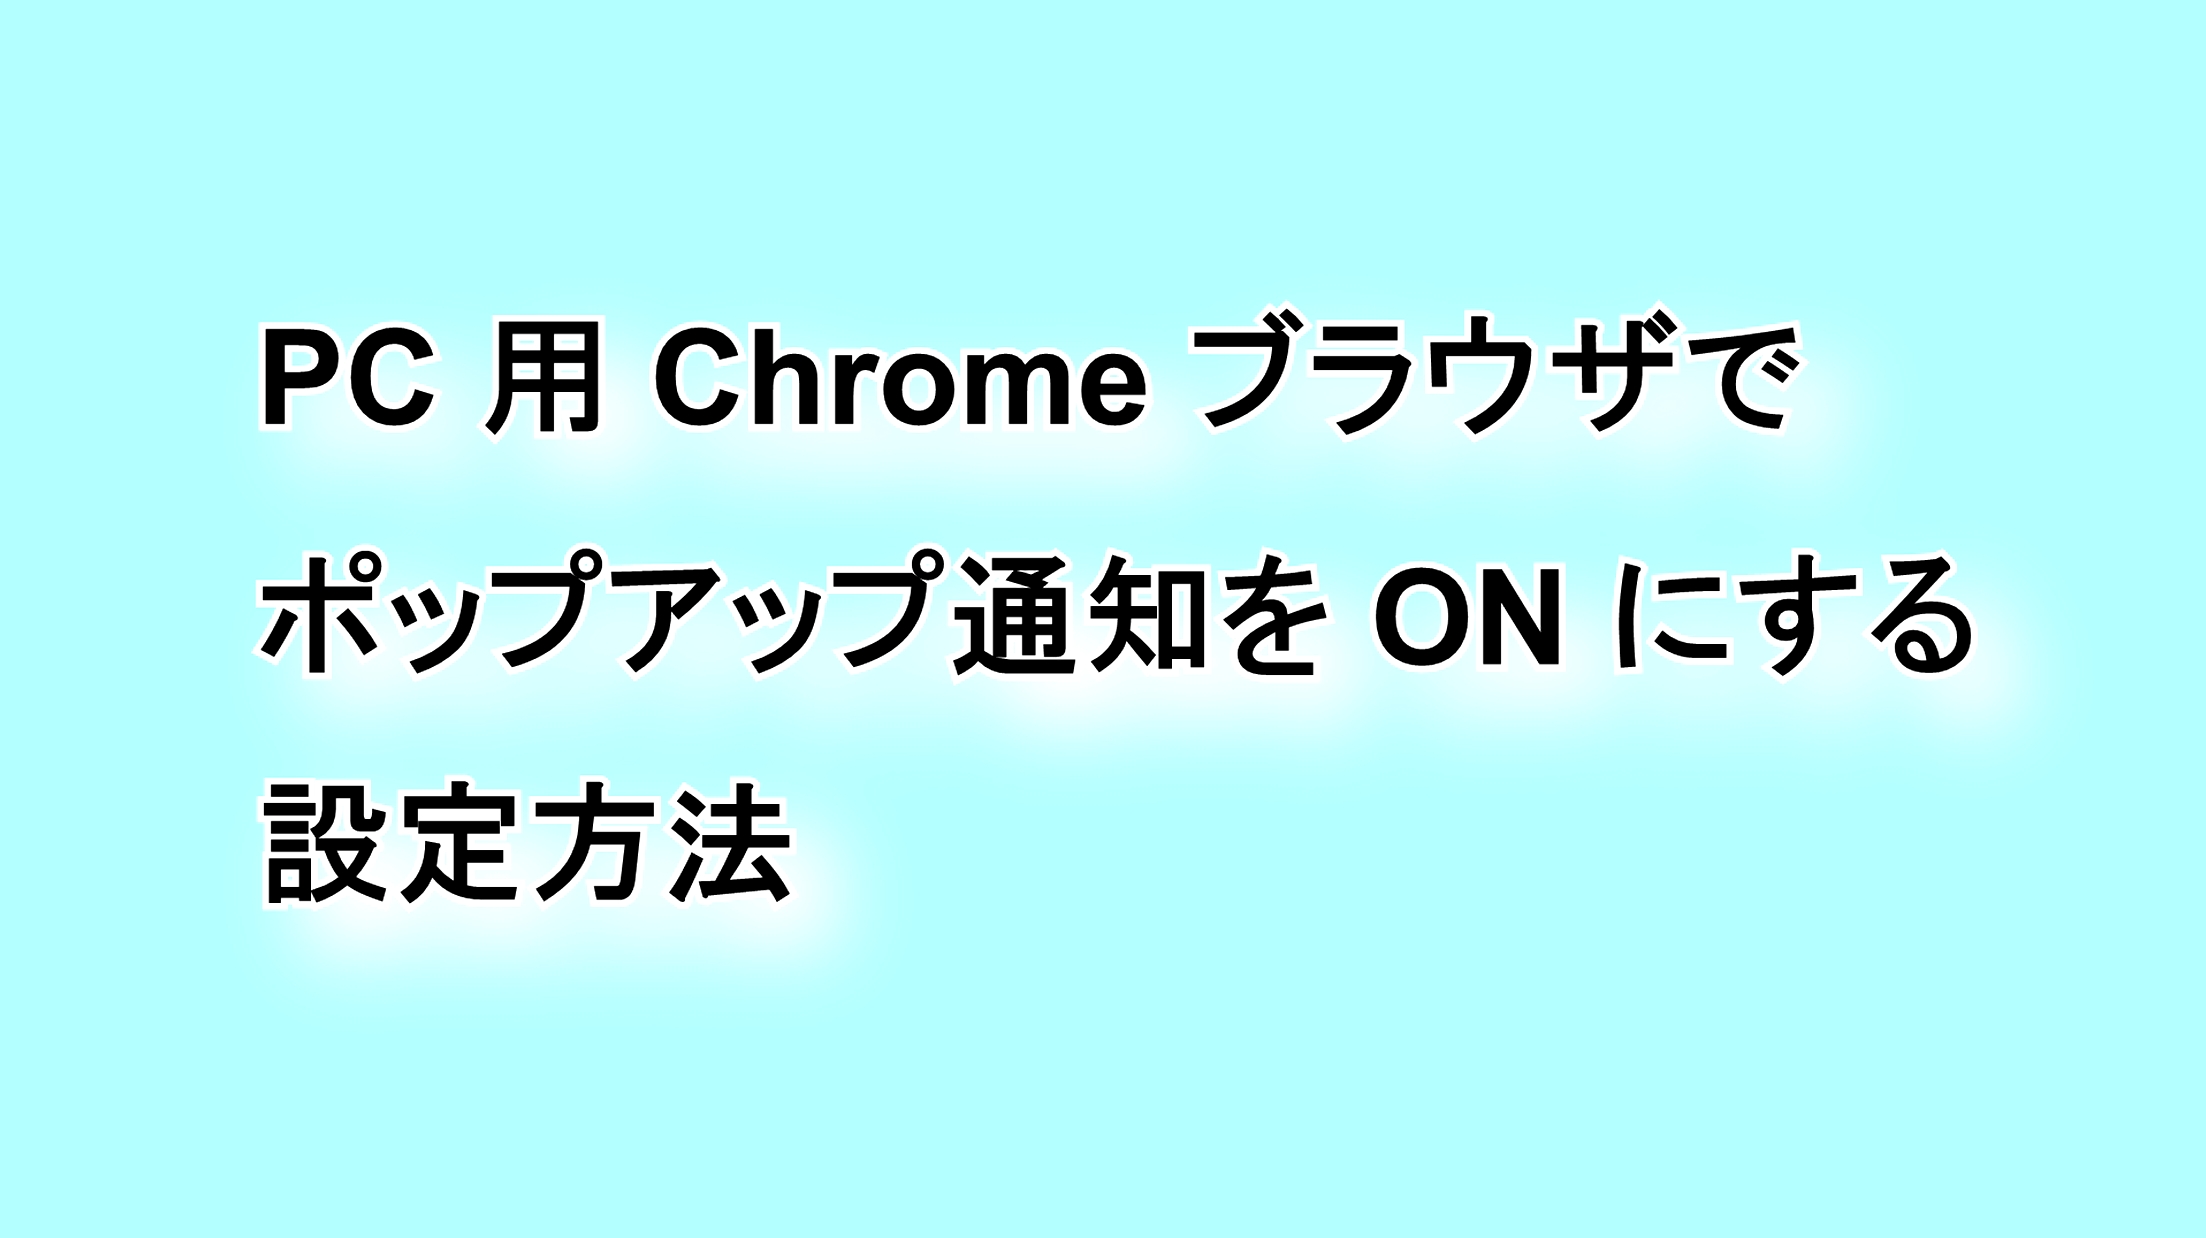 デスクトップ版「Chrome」ブラウザのポップアップ通知の設定方法